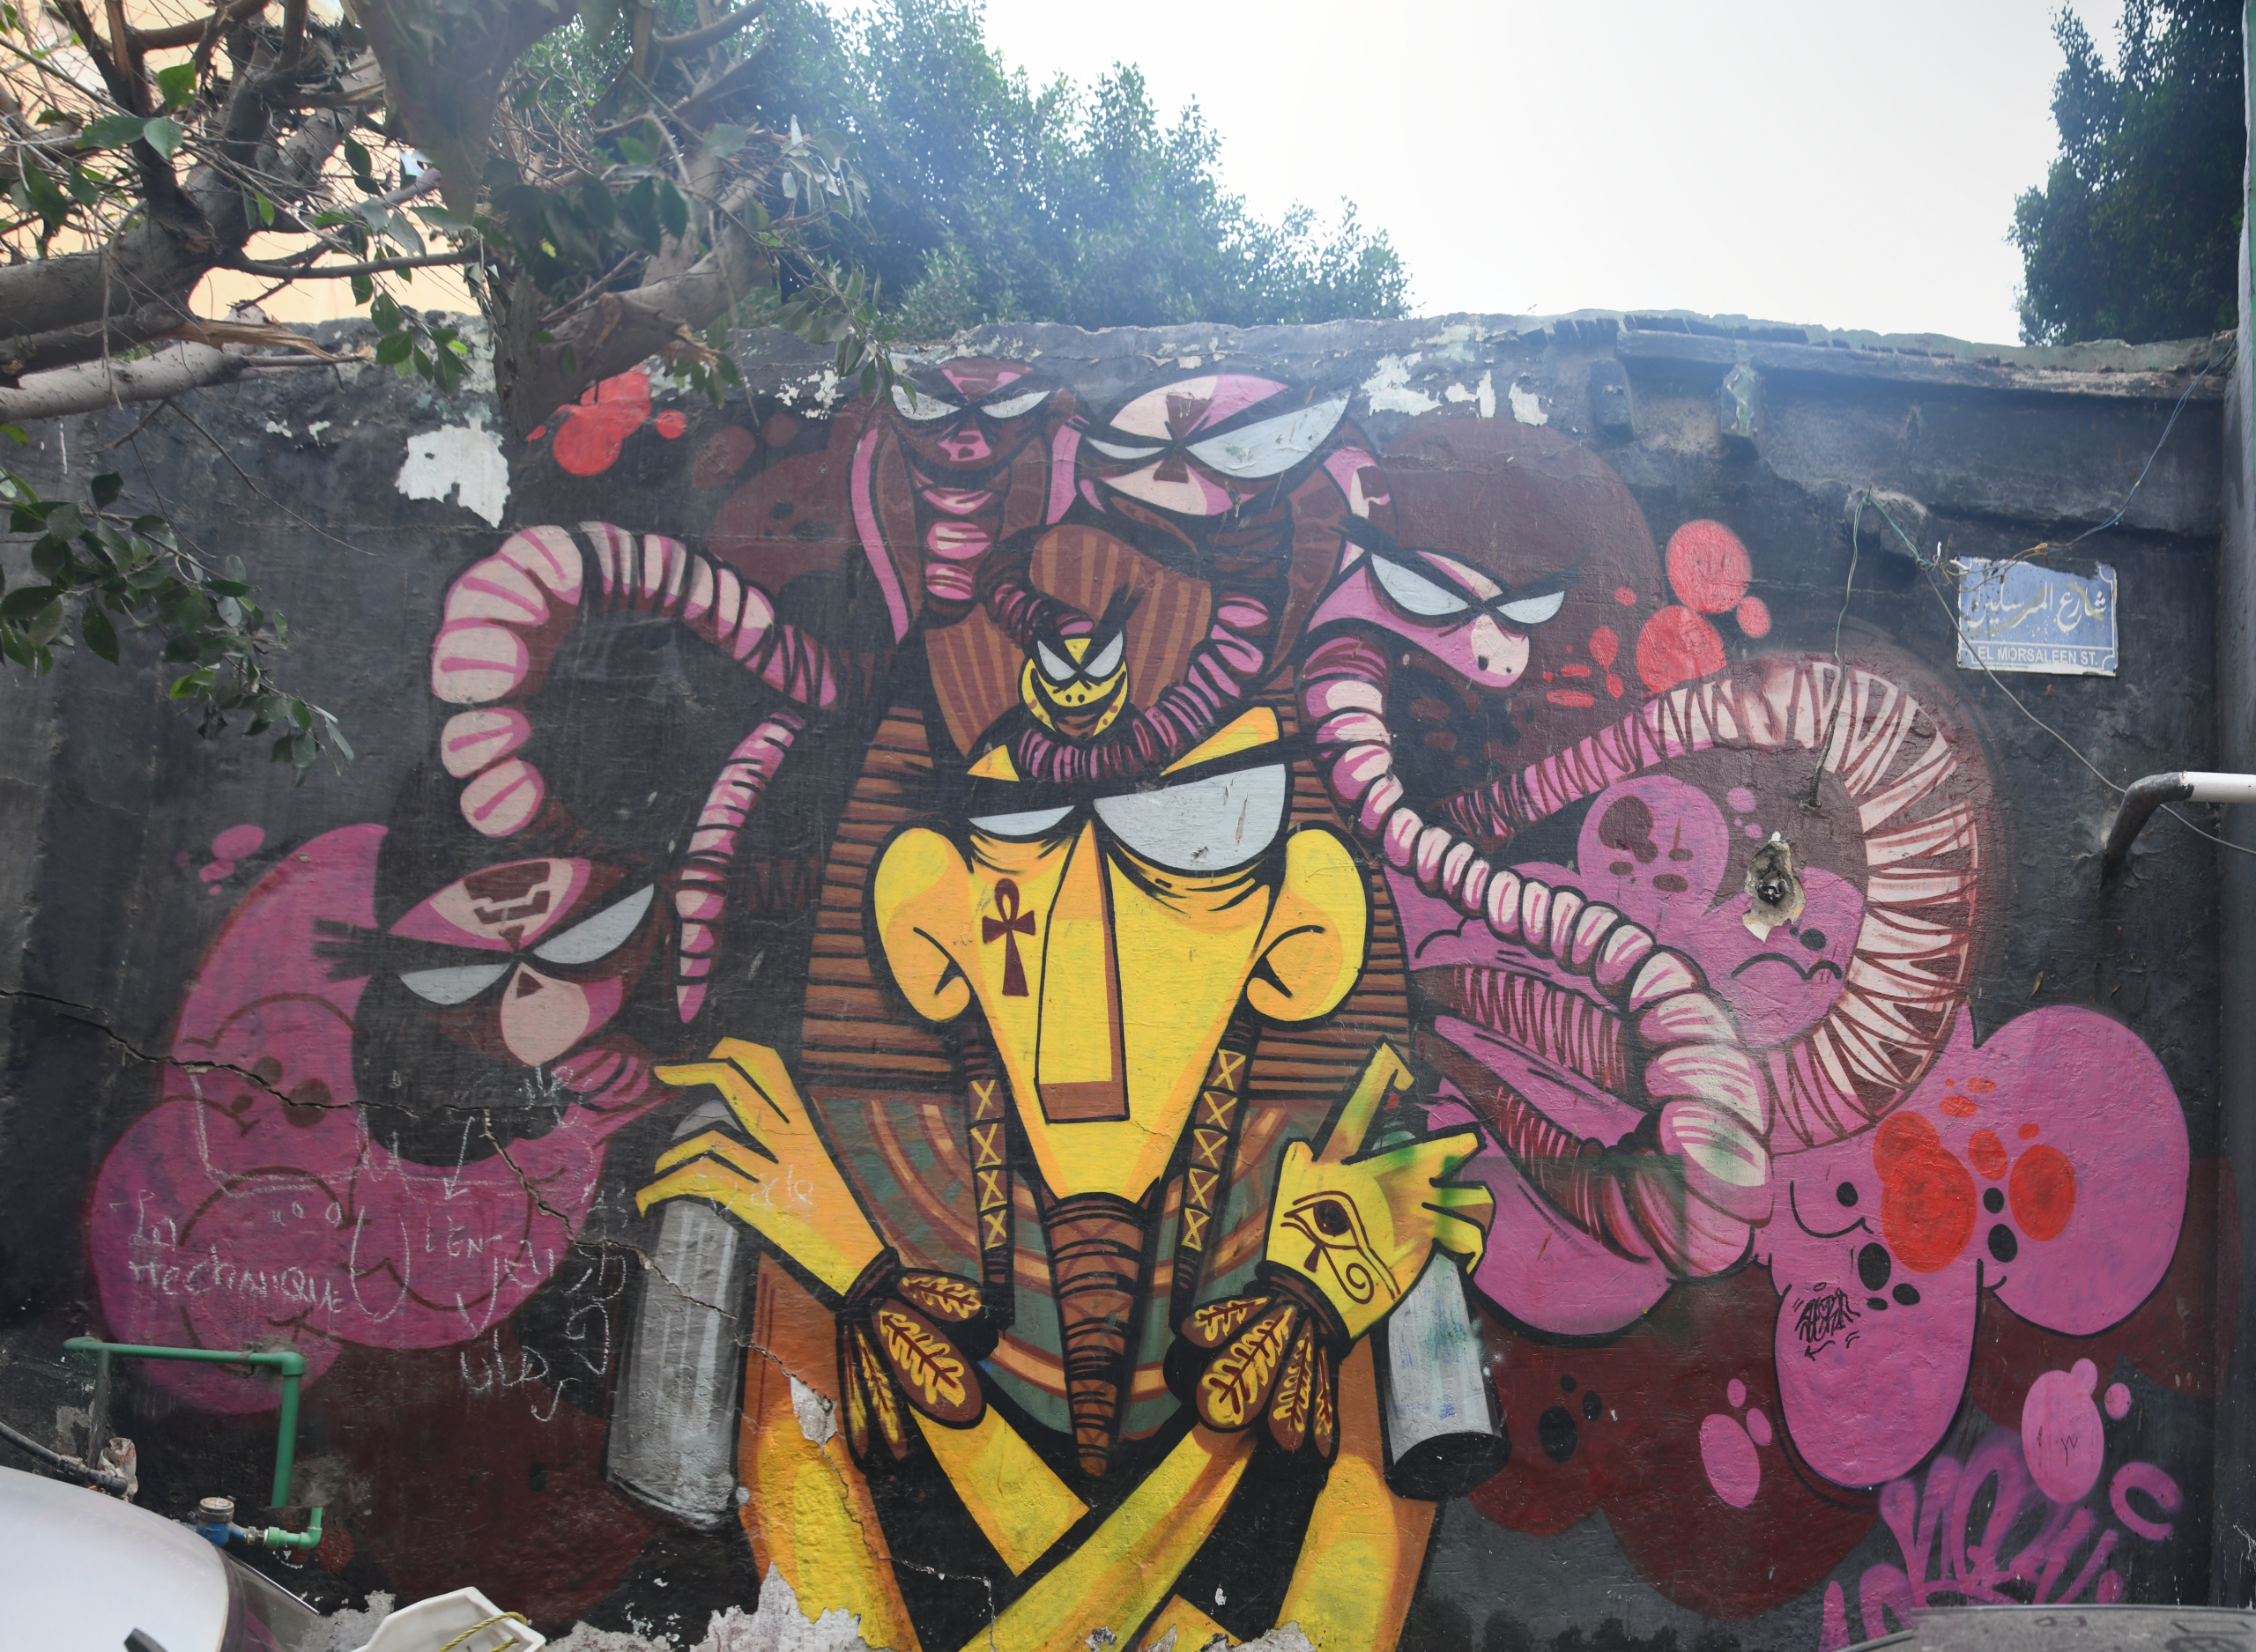 Graffiti by O Noufal depicting a modern interpretation of Tutankhamun.